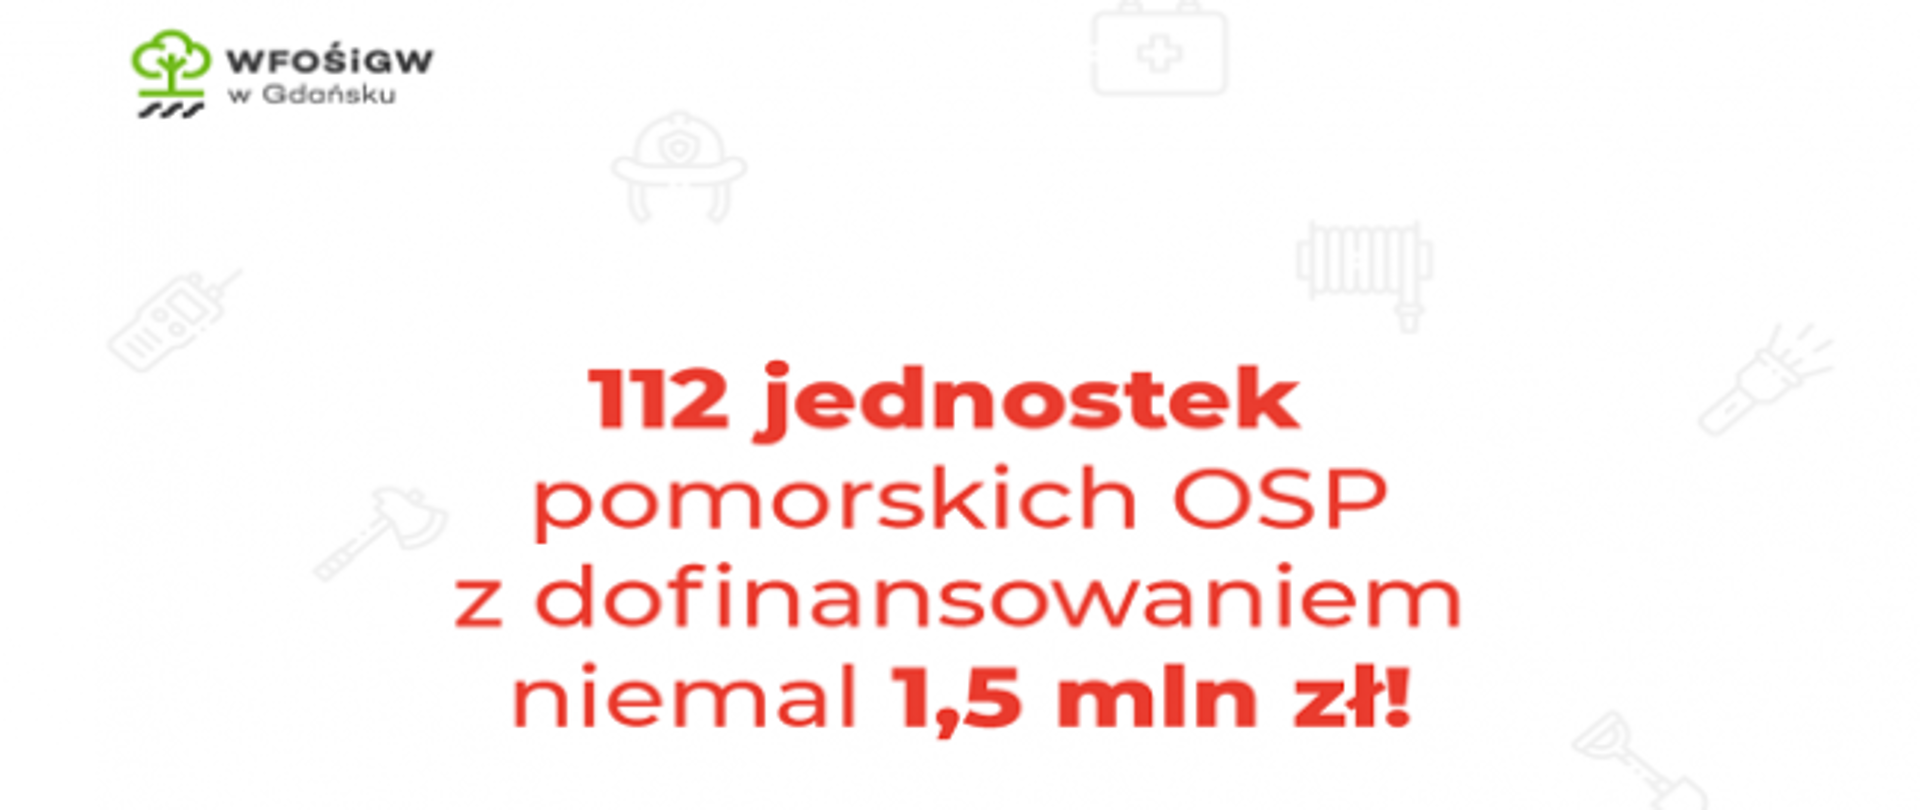 Na zdjęciu widać napis że 112 jednostek pomorskich OSP otrzymało dofinansowanie z WFOŚiGW w programie "FLOREK" na blisko 1,5 miliona złotych